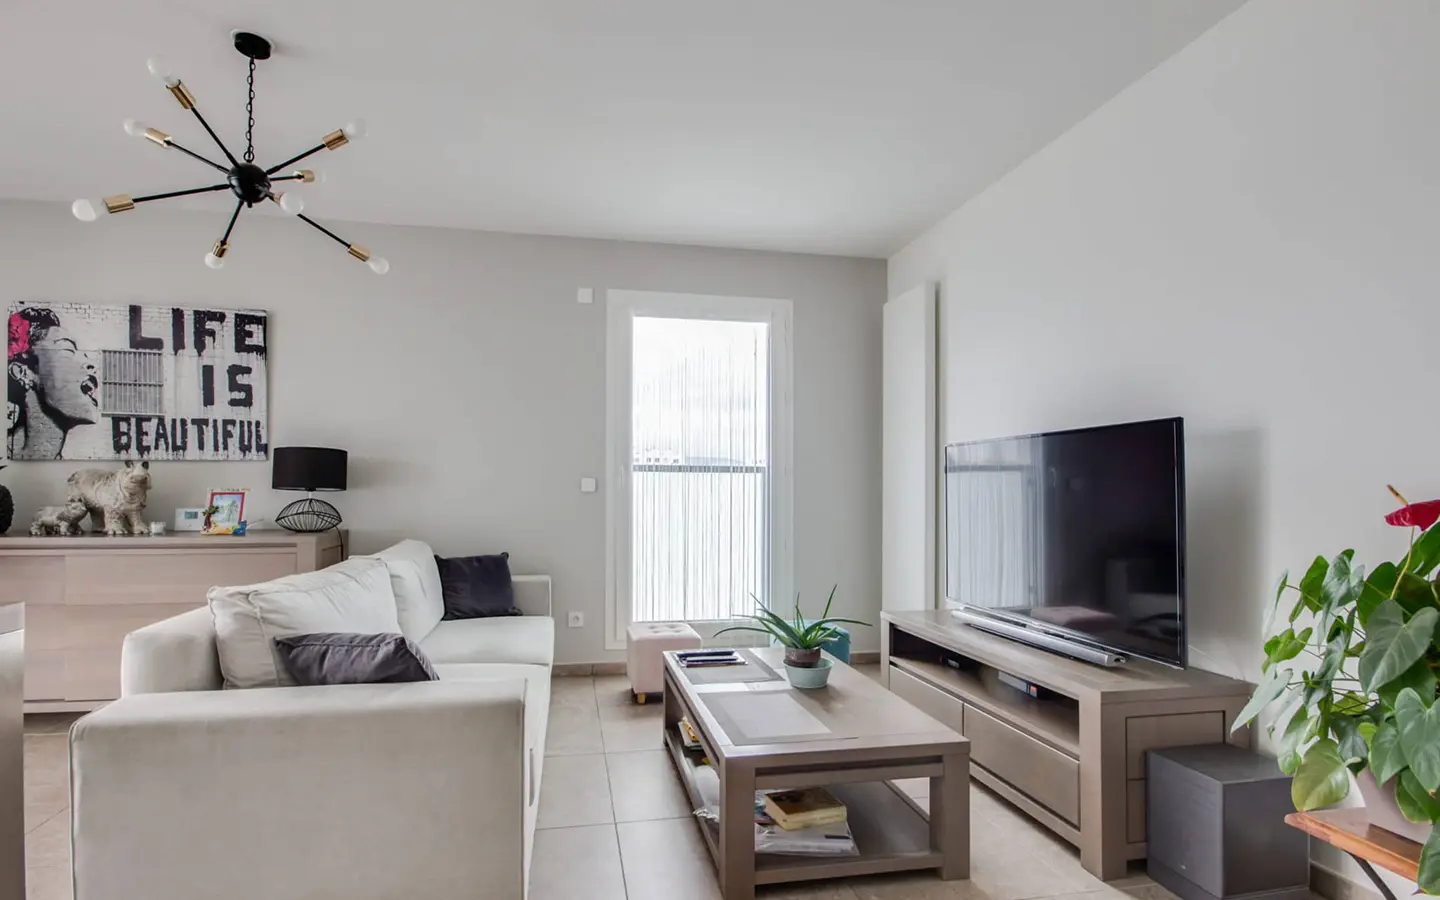 Achat immobilier appartement t3 avec terrasse rénovée Annecy-le-vieux salon